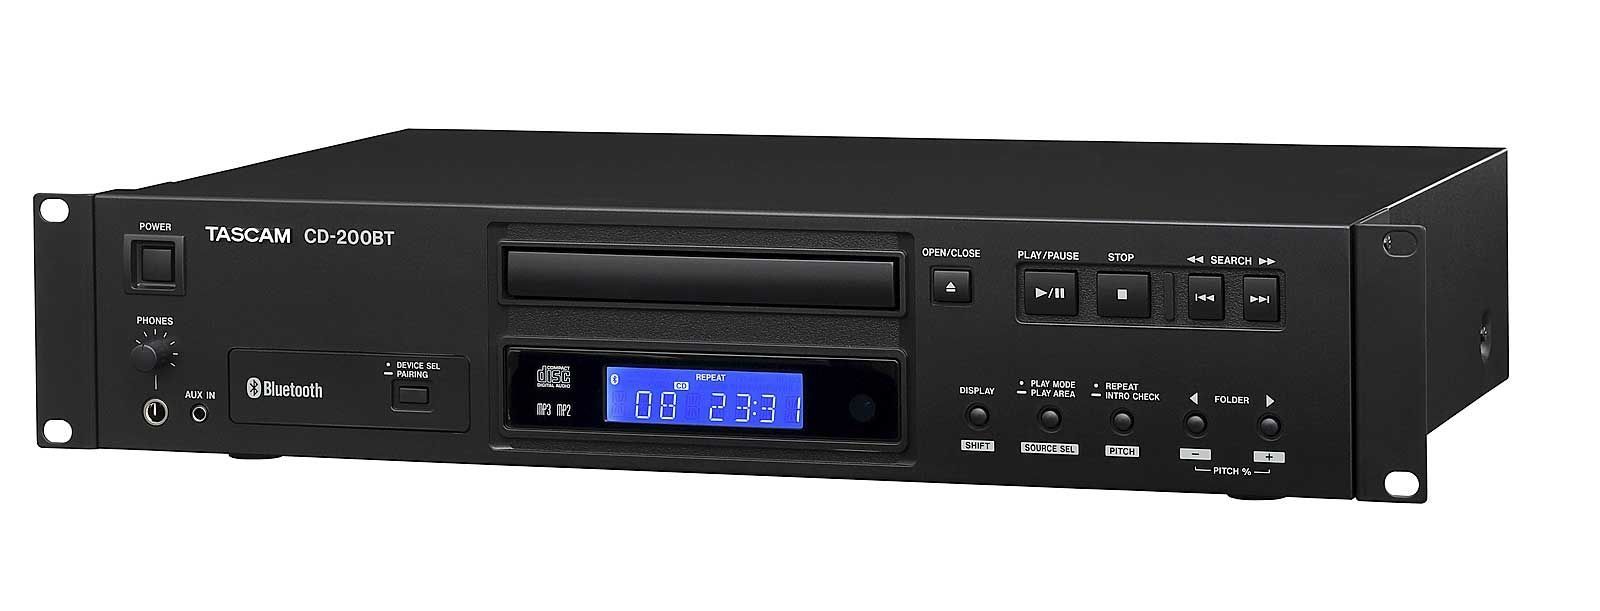 Tascam CD-200 BT CD-Player mit Bluetooth-Empfänger inkl. Fernbedienung